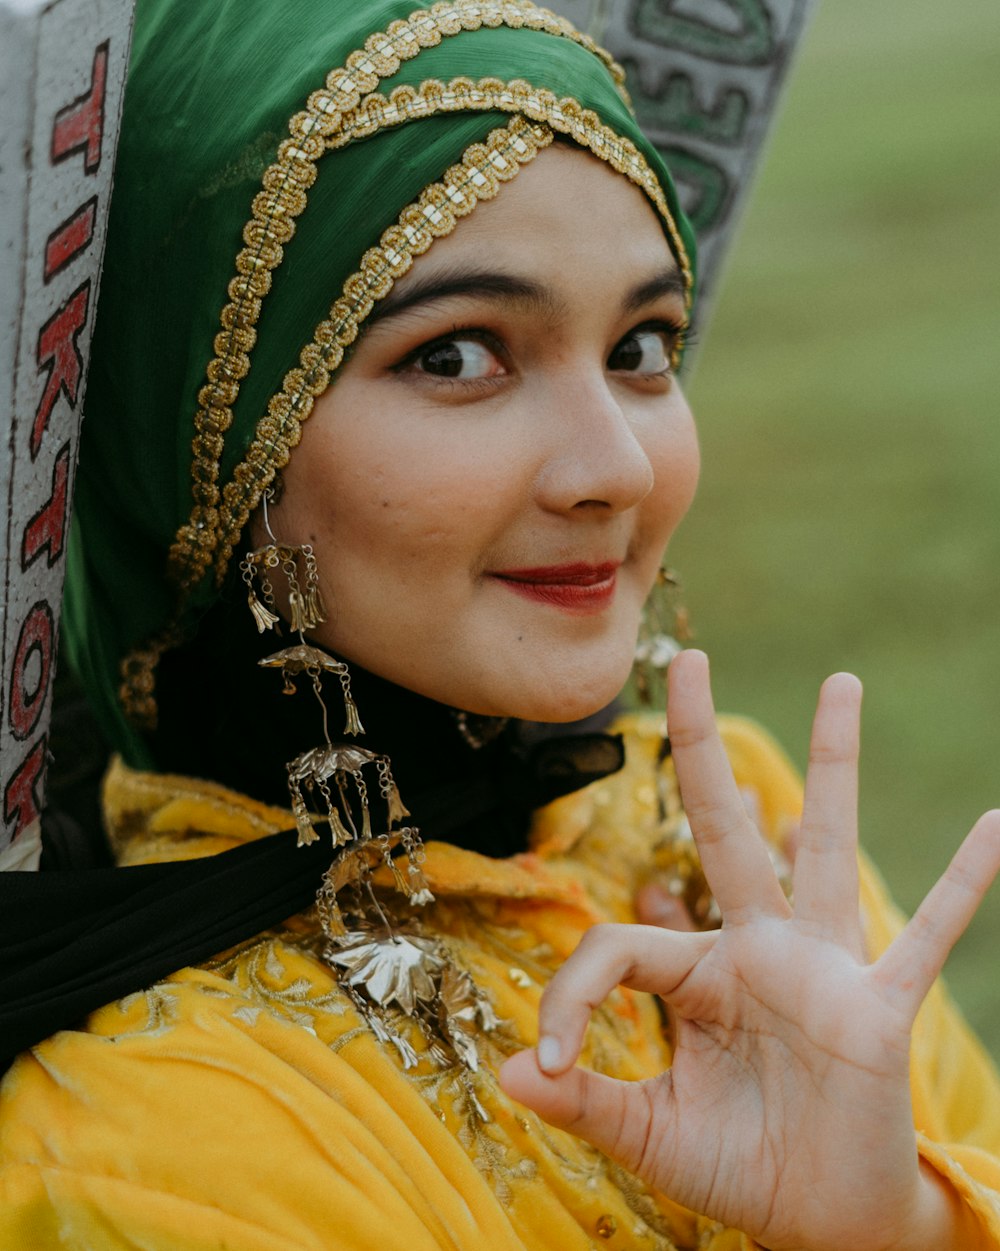 Eine Frau mit grünem Kopfschmuck macht ein Peace-Zeichen